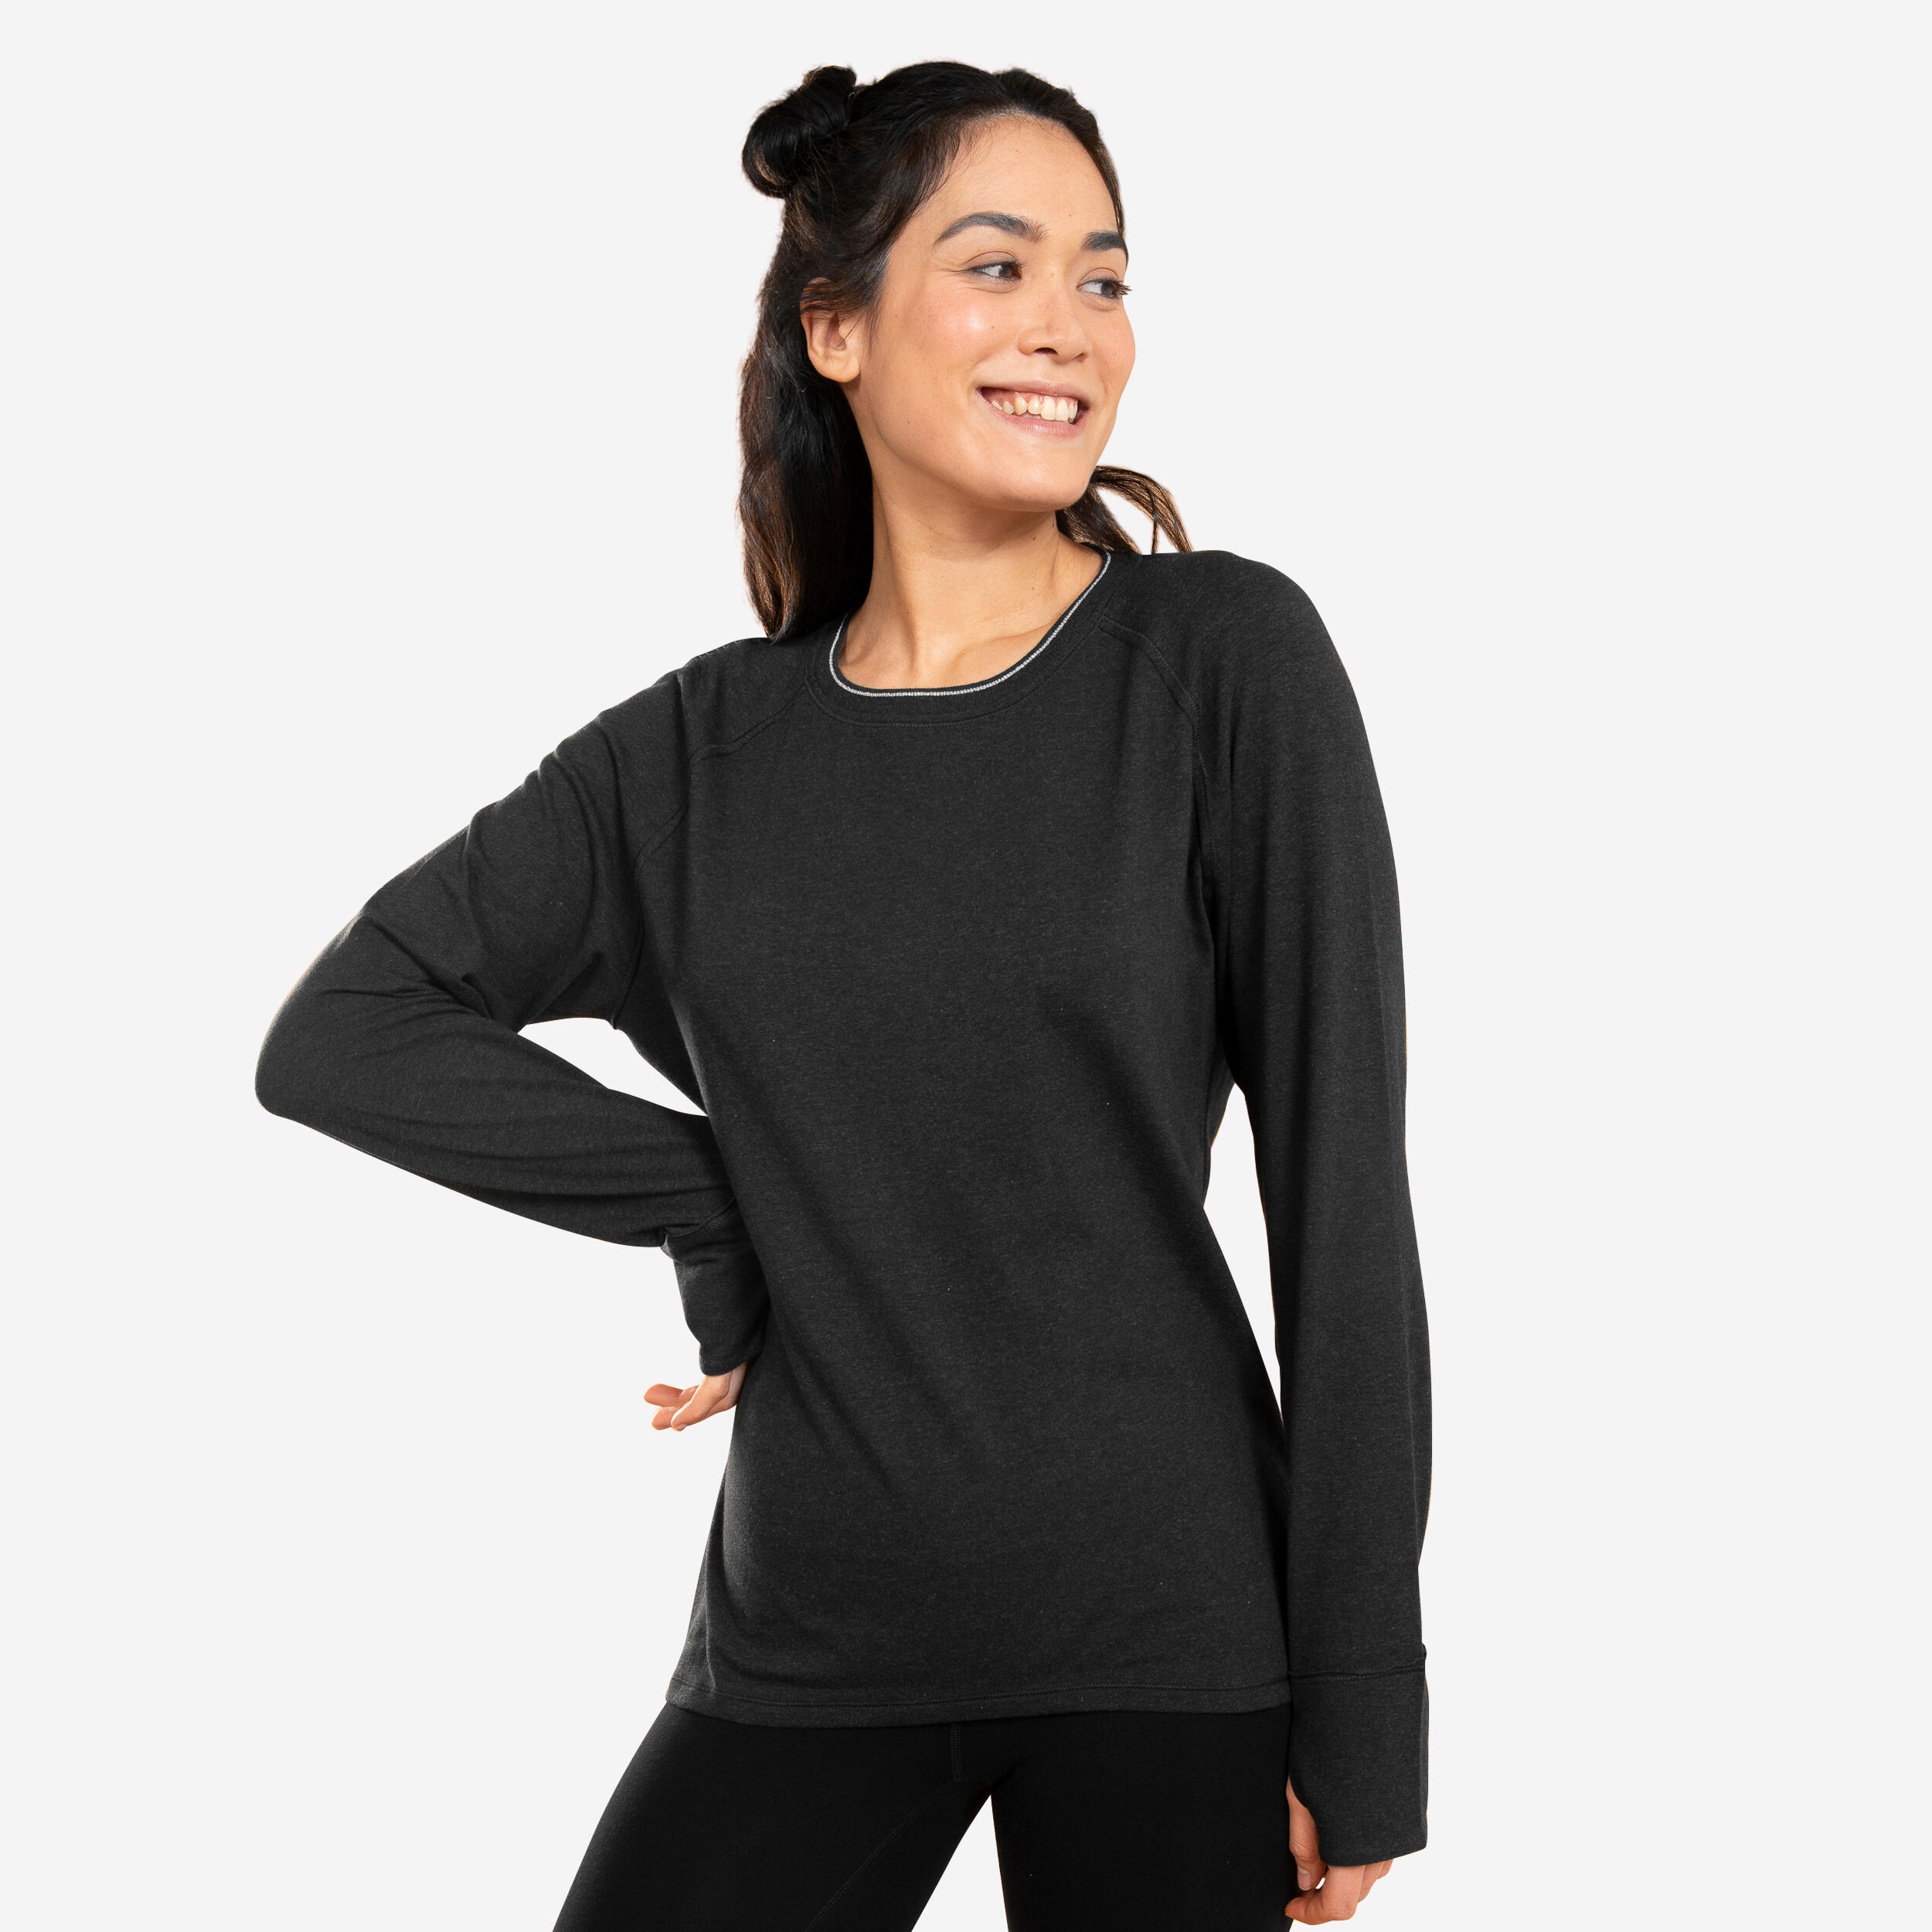 Women's Long-Sleeved Yoga T-Shirt - Black 1/5